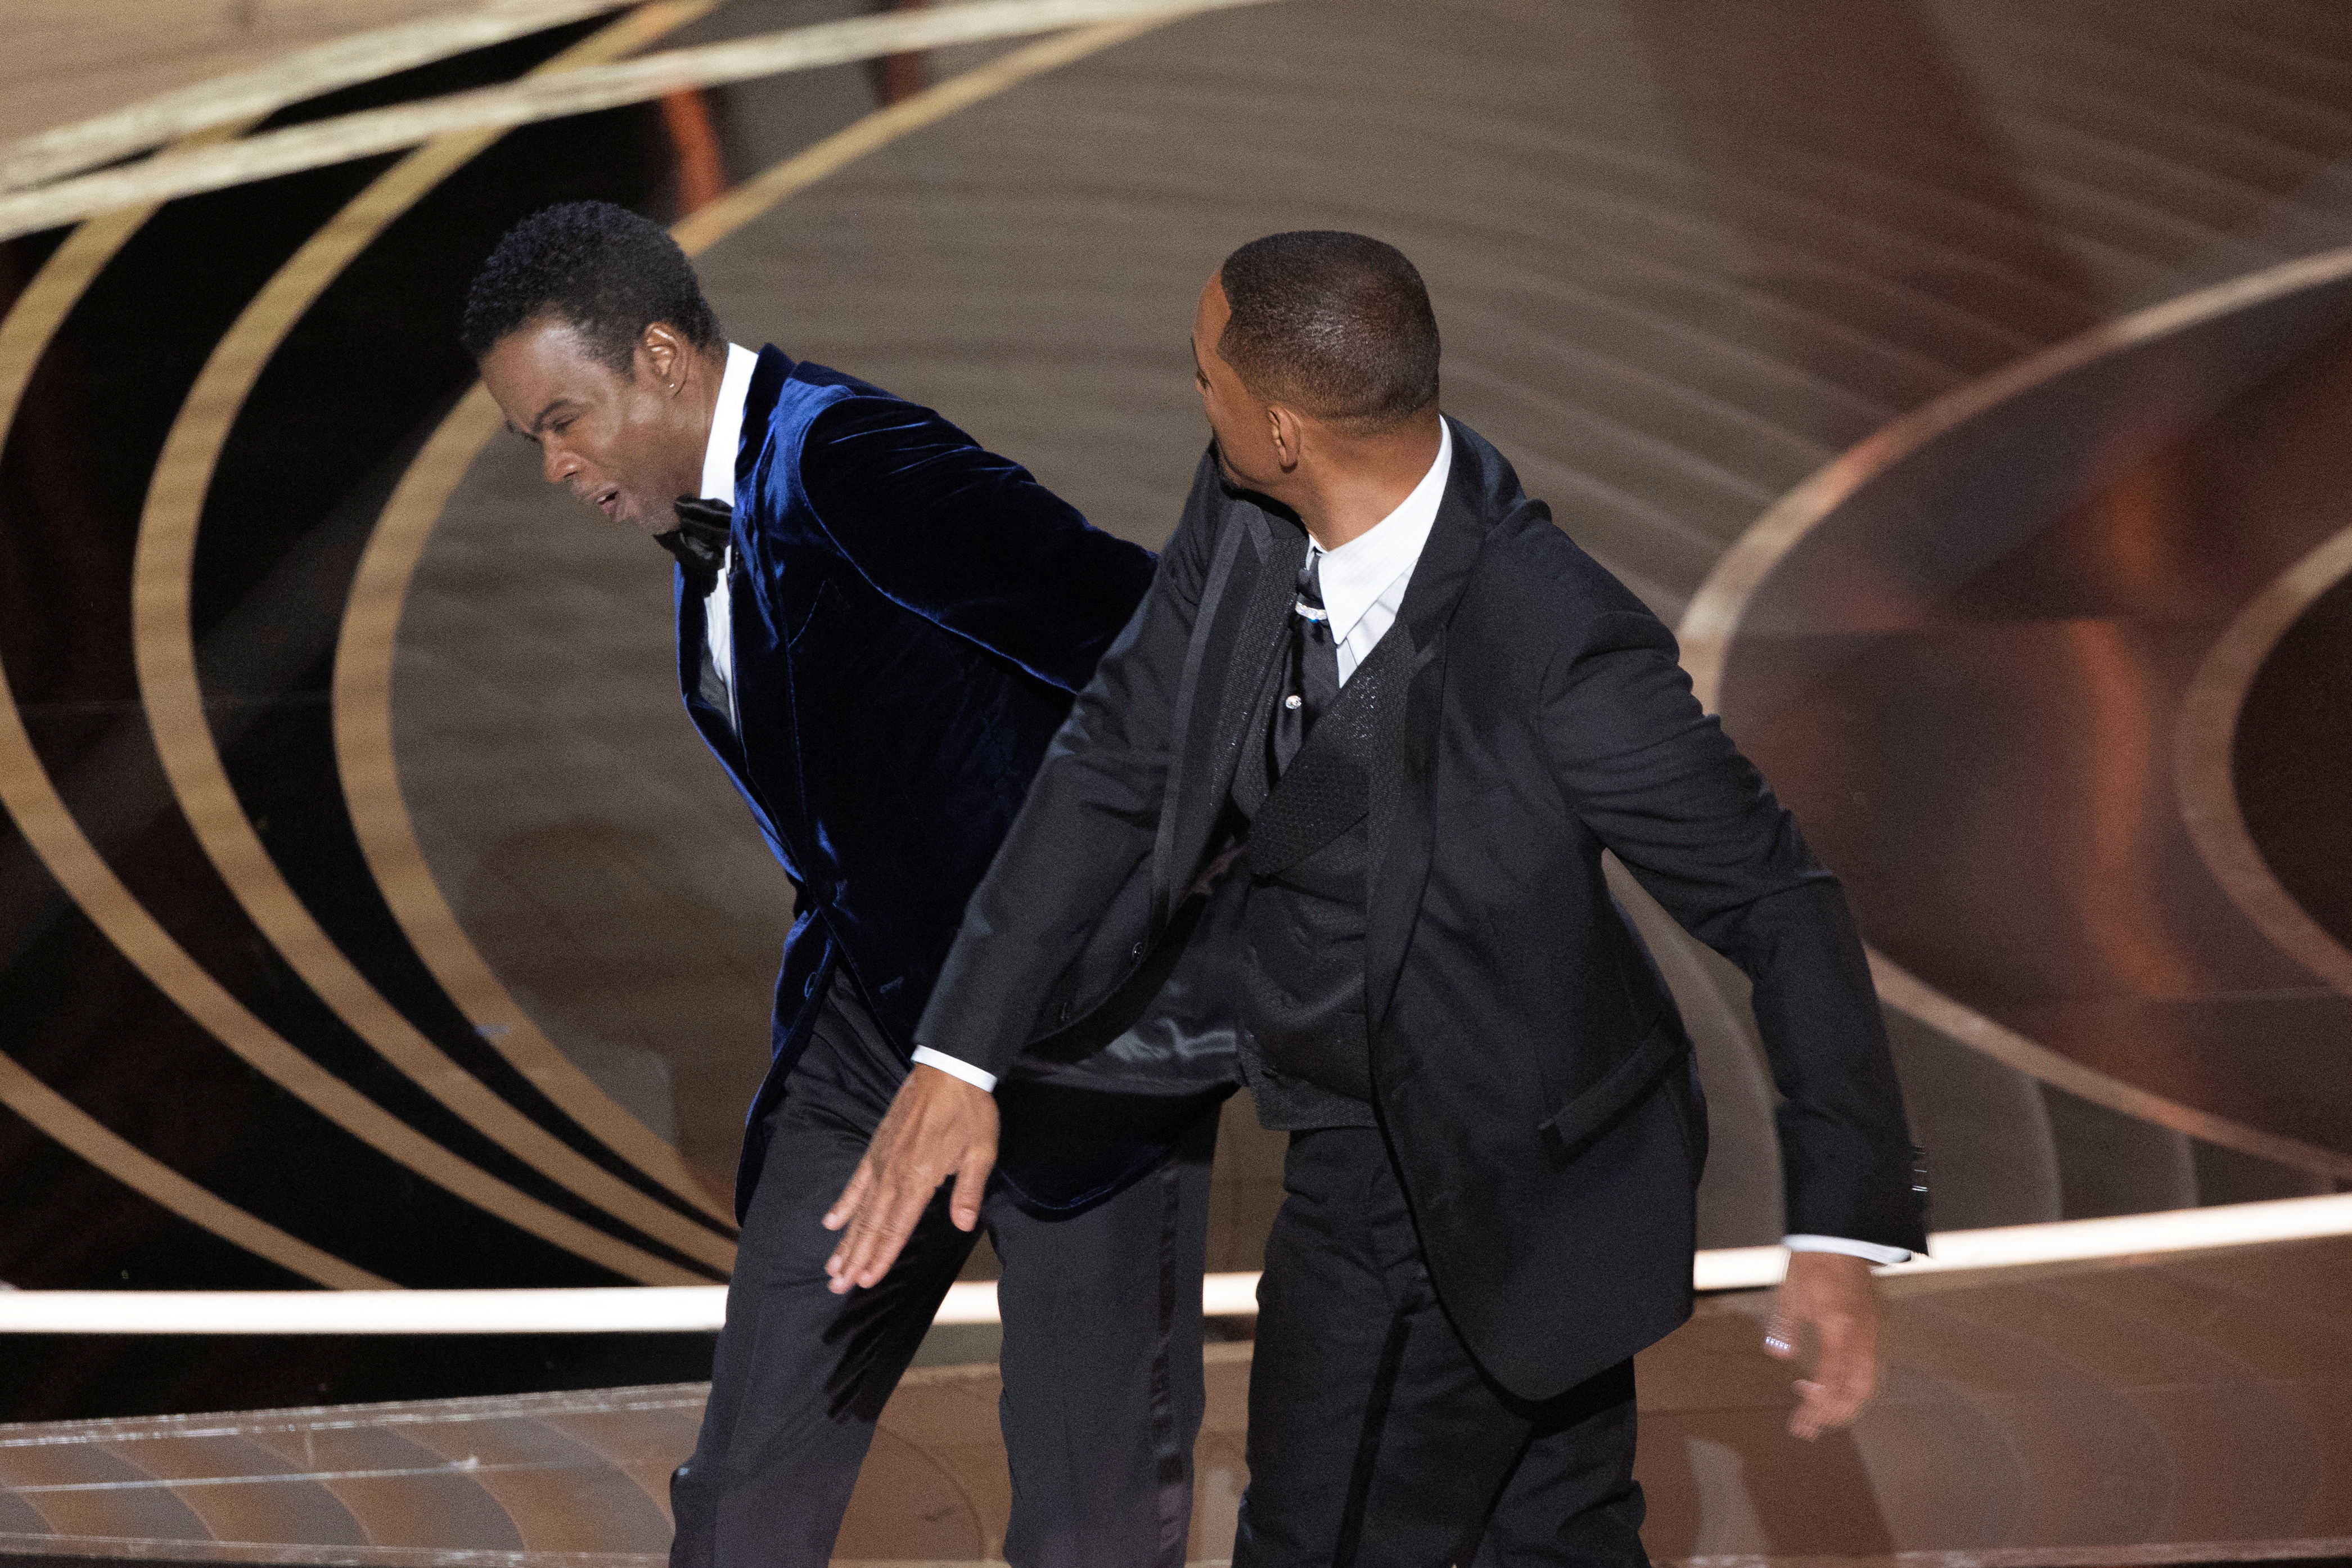 Así fue la bofetada que Will Smith le propinó a Chris Rock en la ceremonia de La Academia de Artes Cinematográficas (Foto: REUTERS/Brian Snyder)